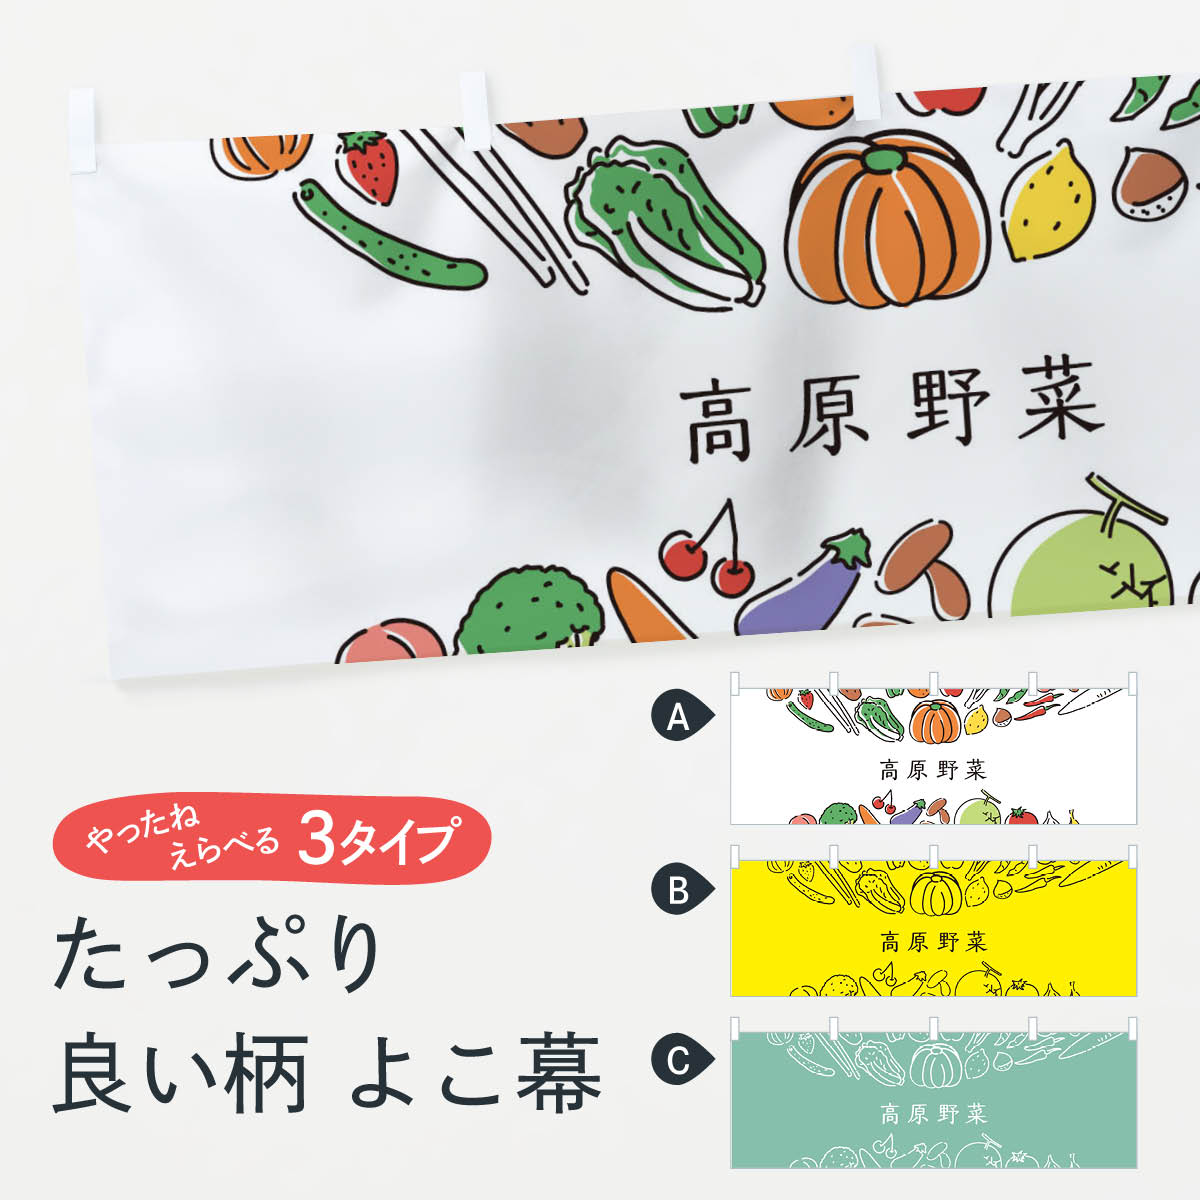 【ネコポス送料360】 横幕 高原野菜 7KPT やさい 新鮮野菜・直売